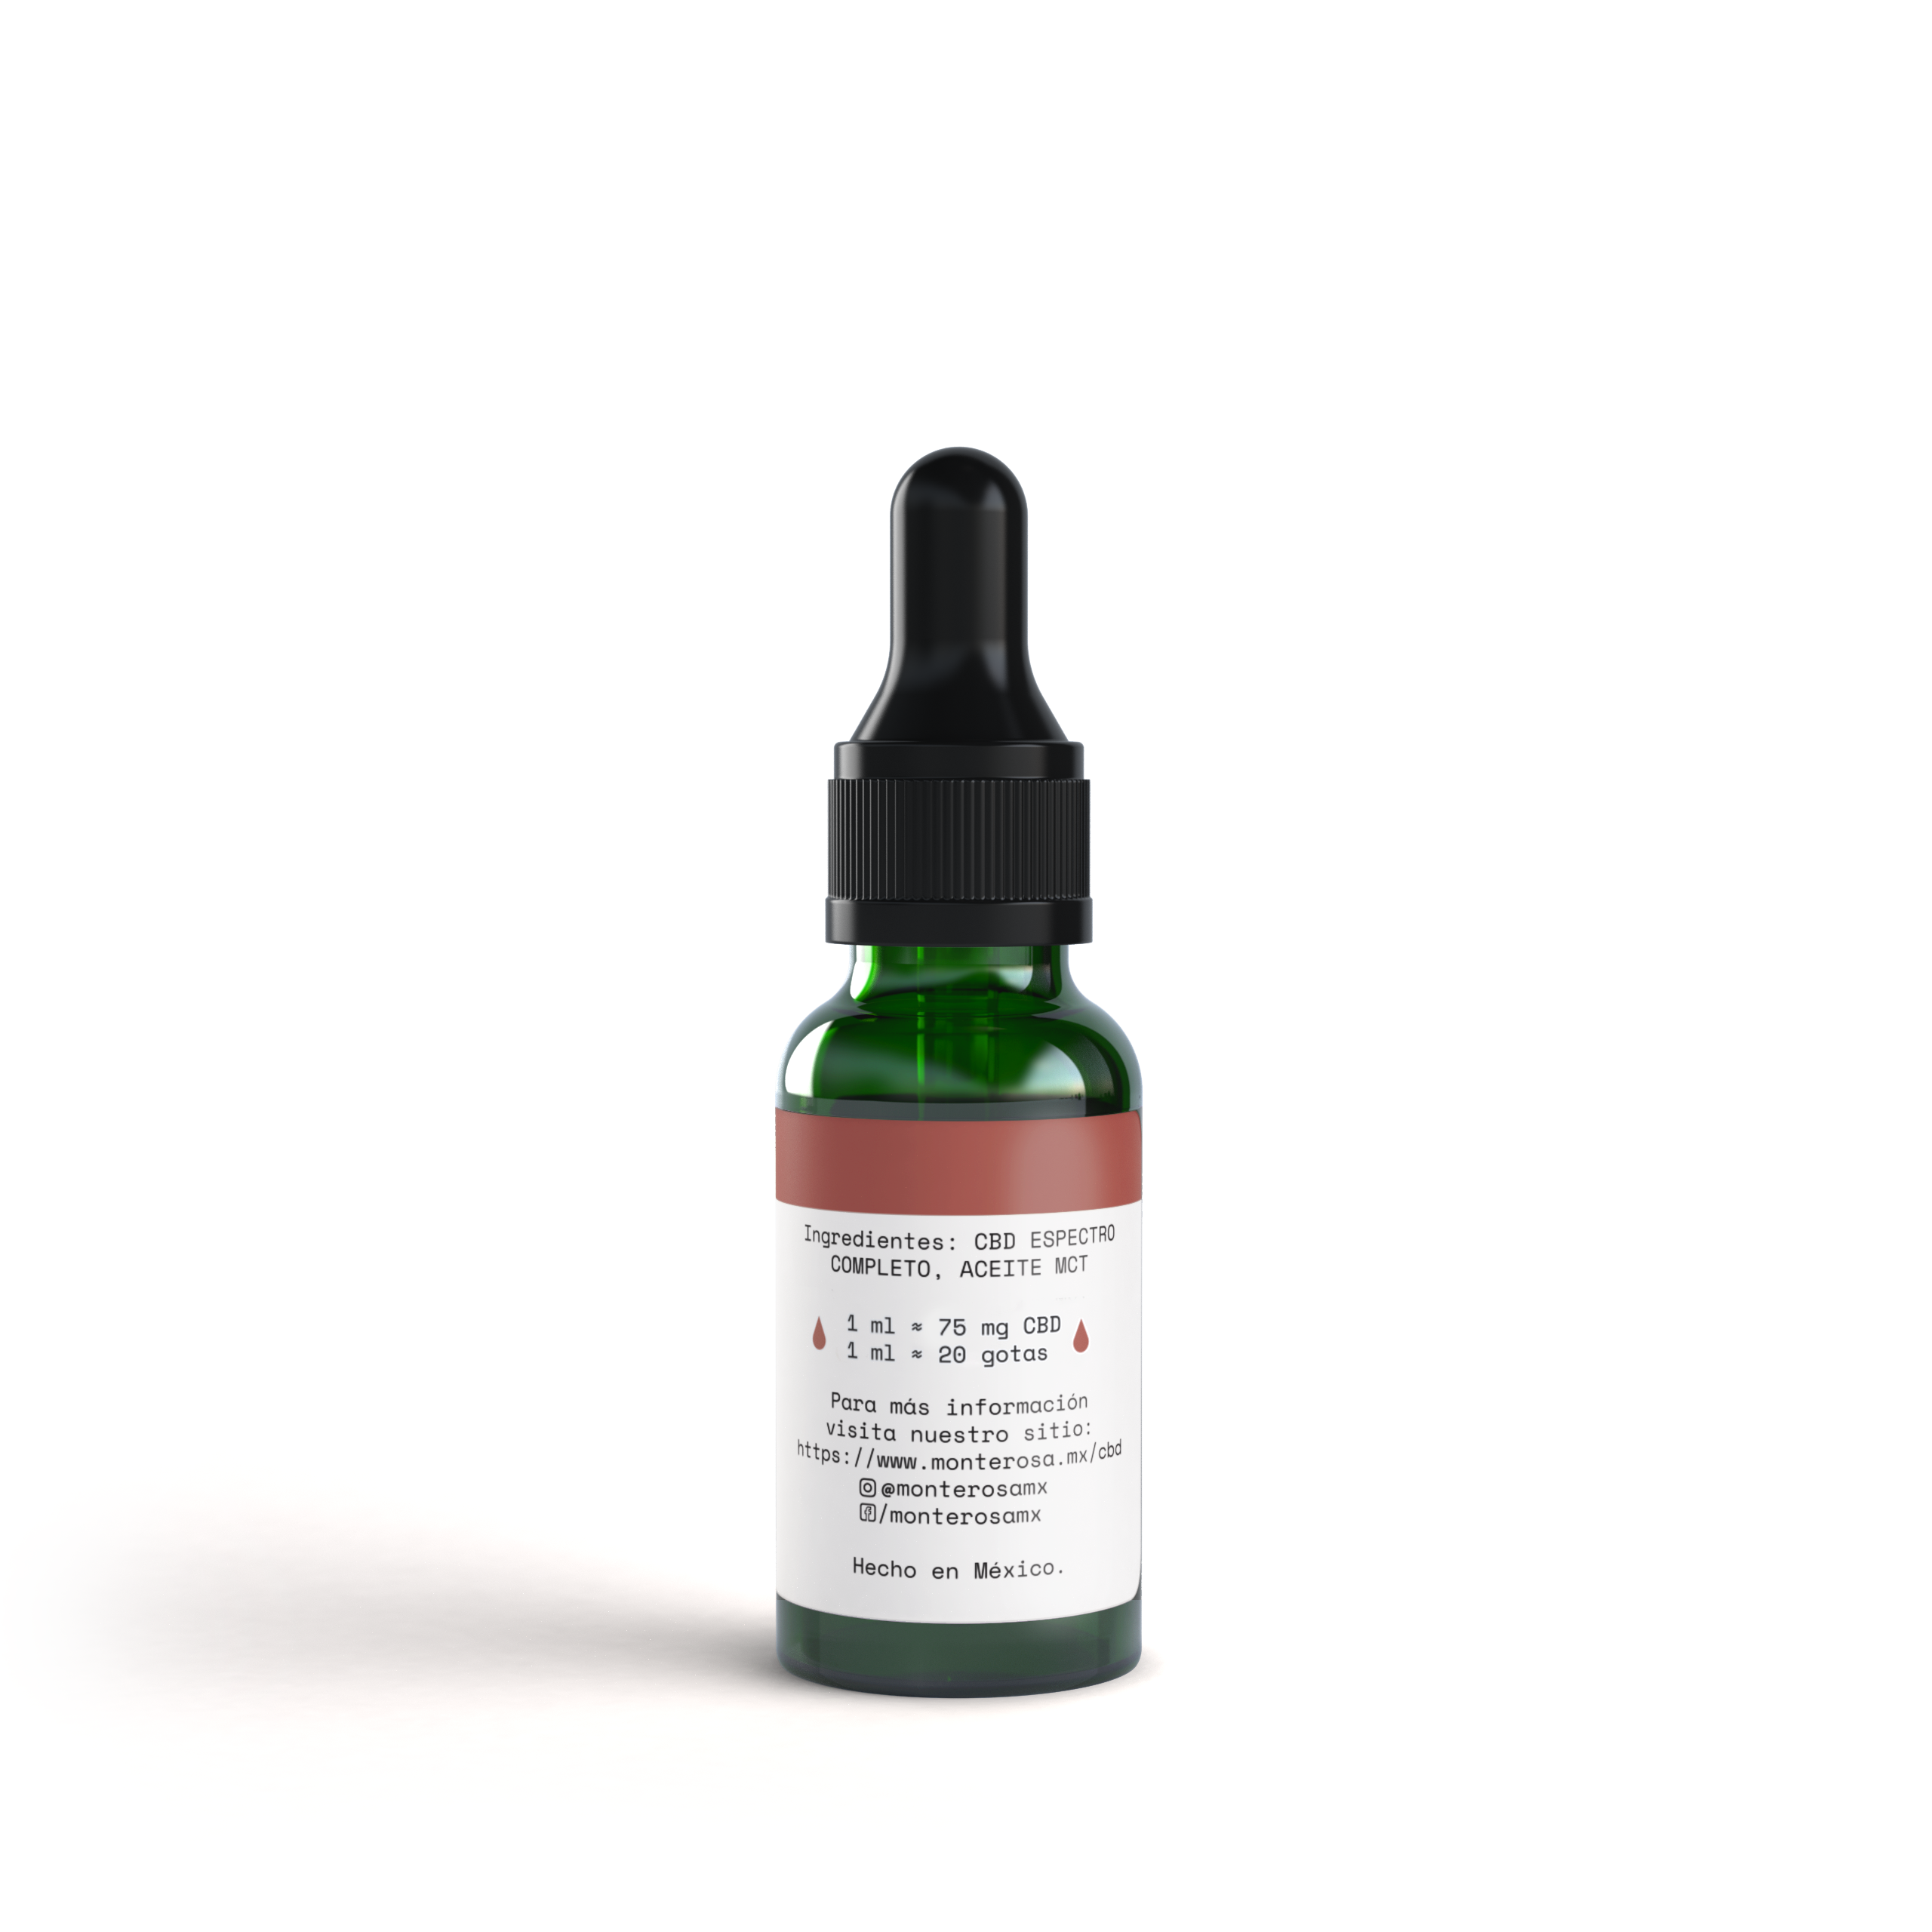 Gotero de aceite con 1500 mg de CBD- Natural – Denda Mexico